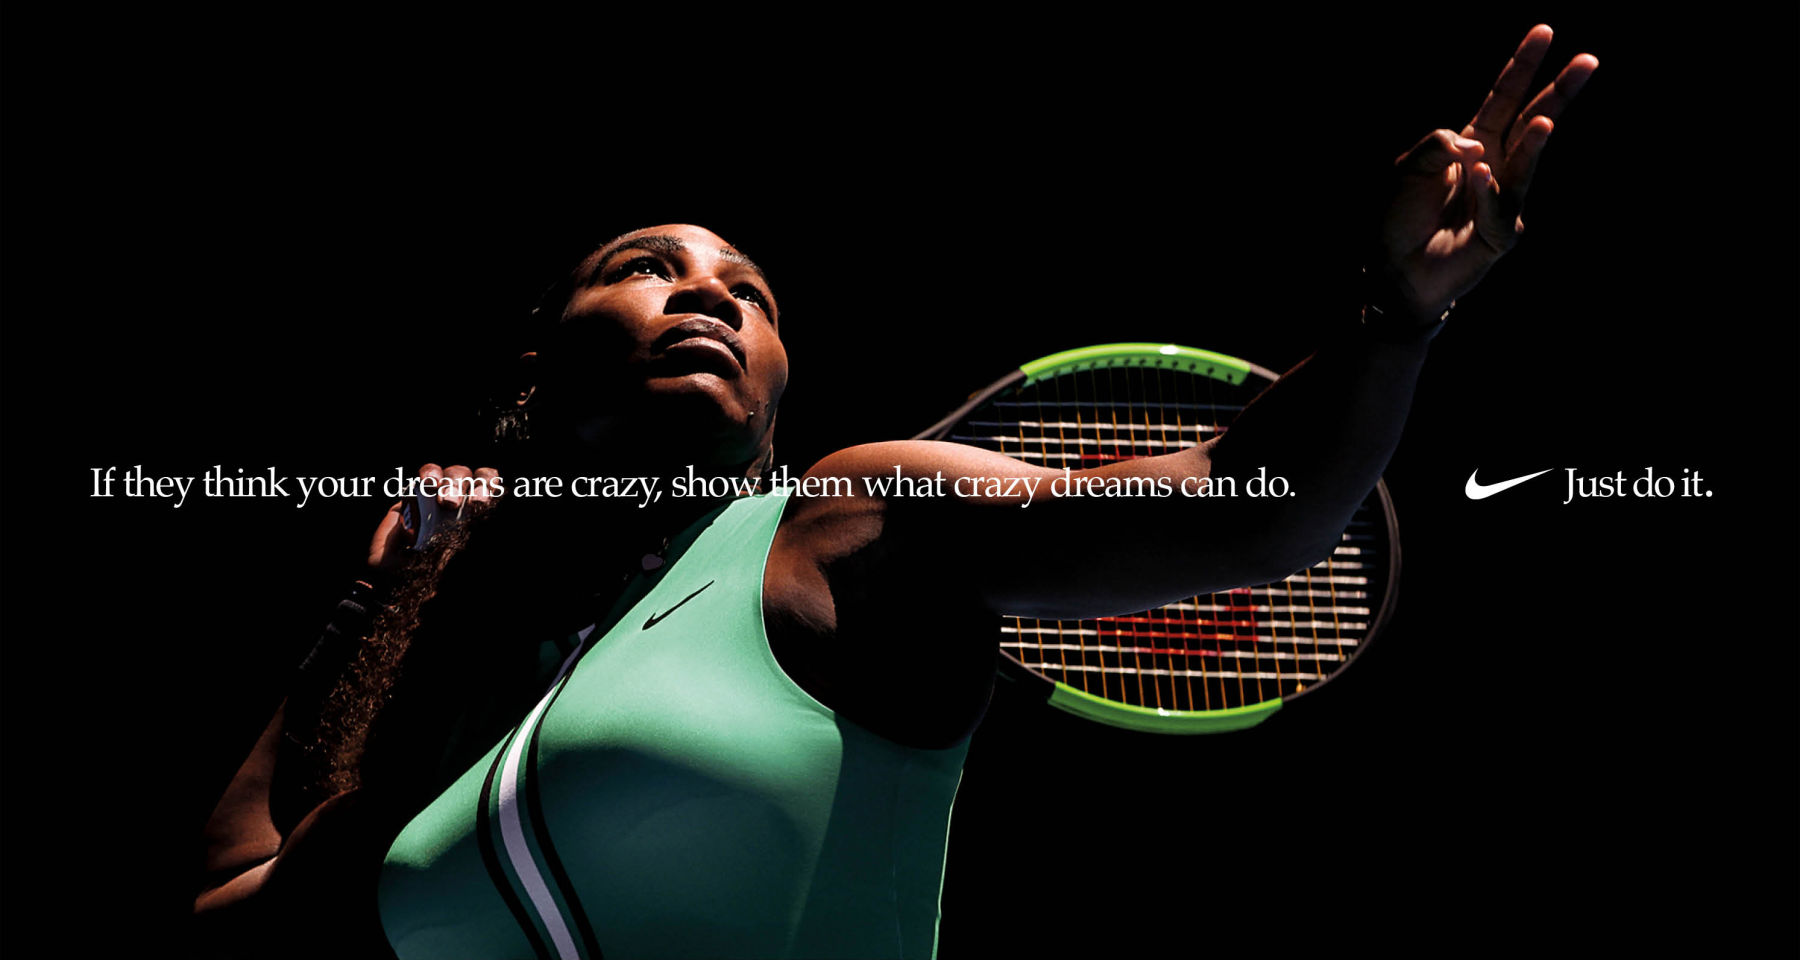 Serena Williams Social Dream Crazier